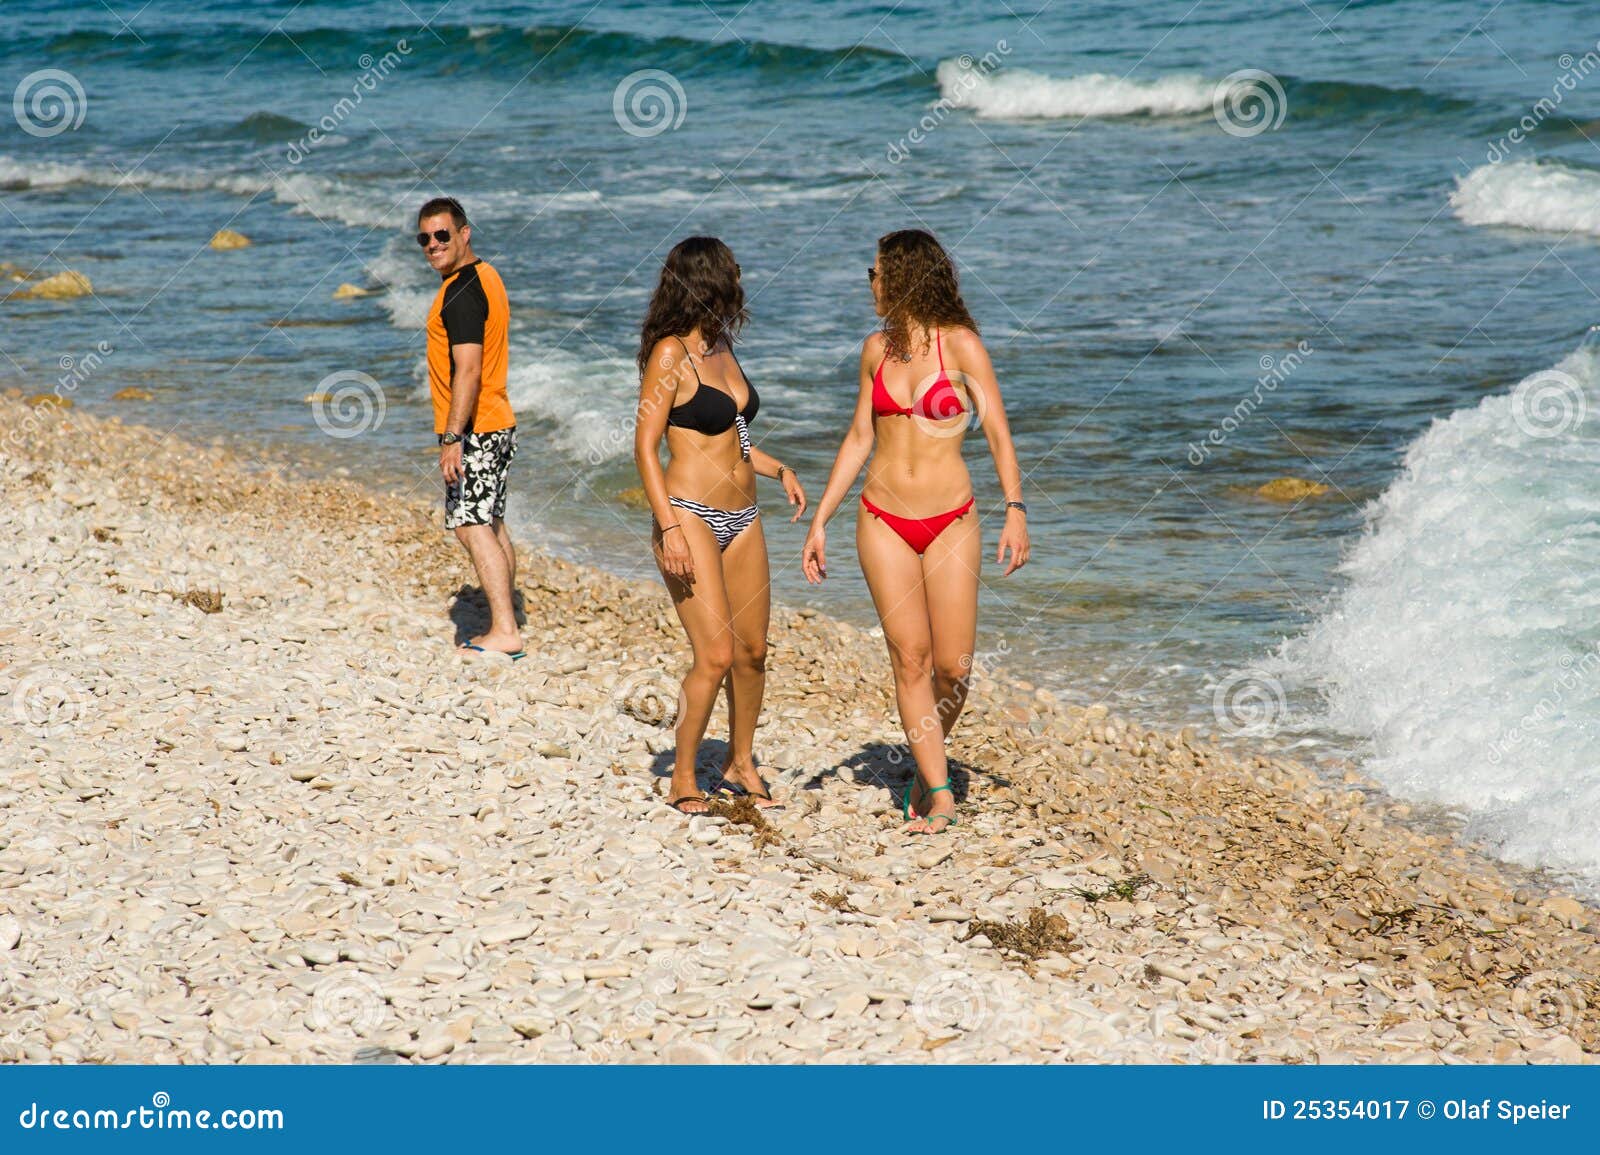 naked beach voyeur teens